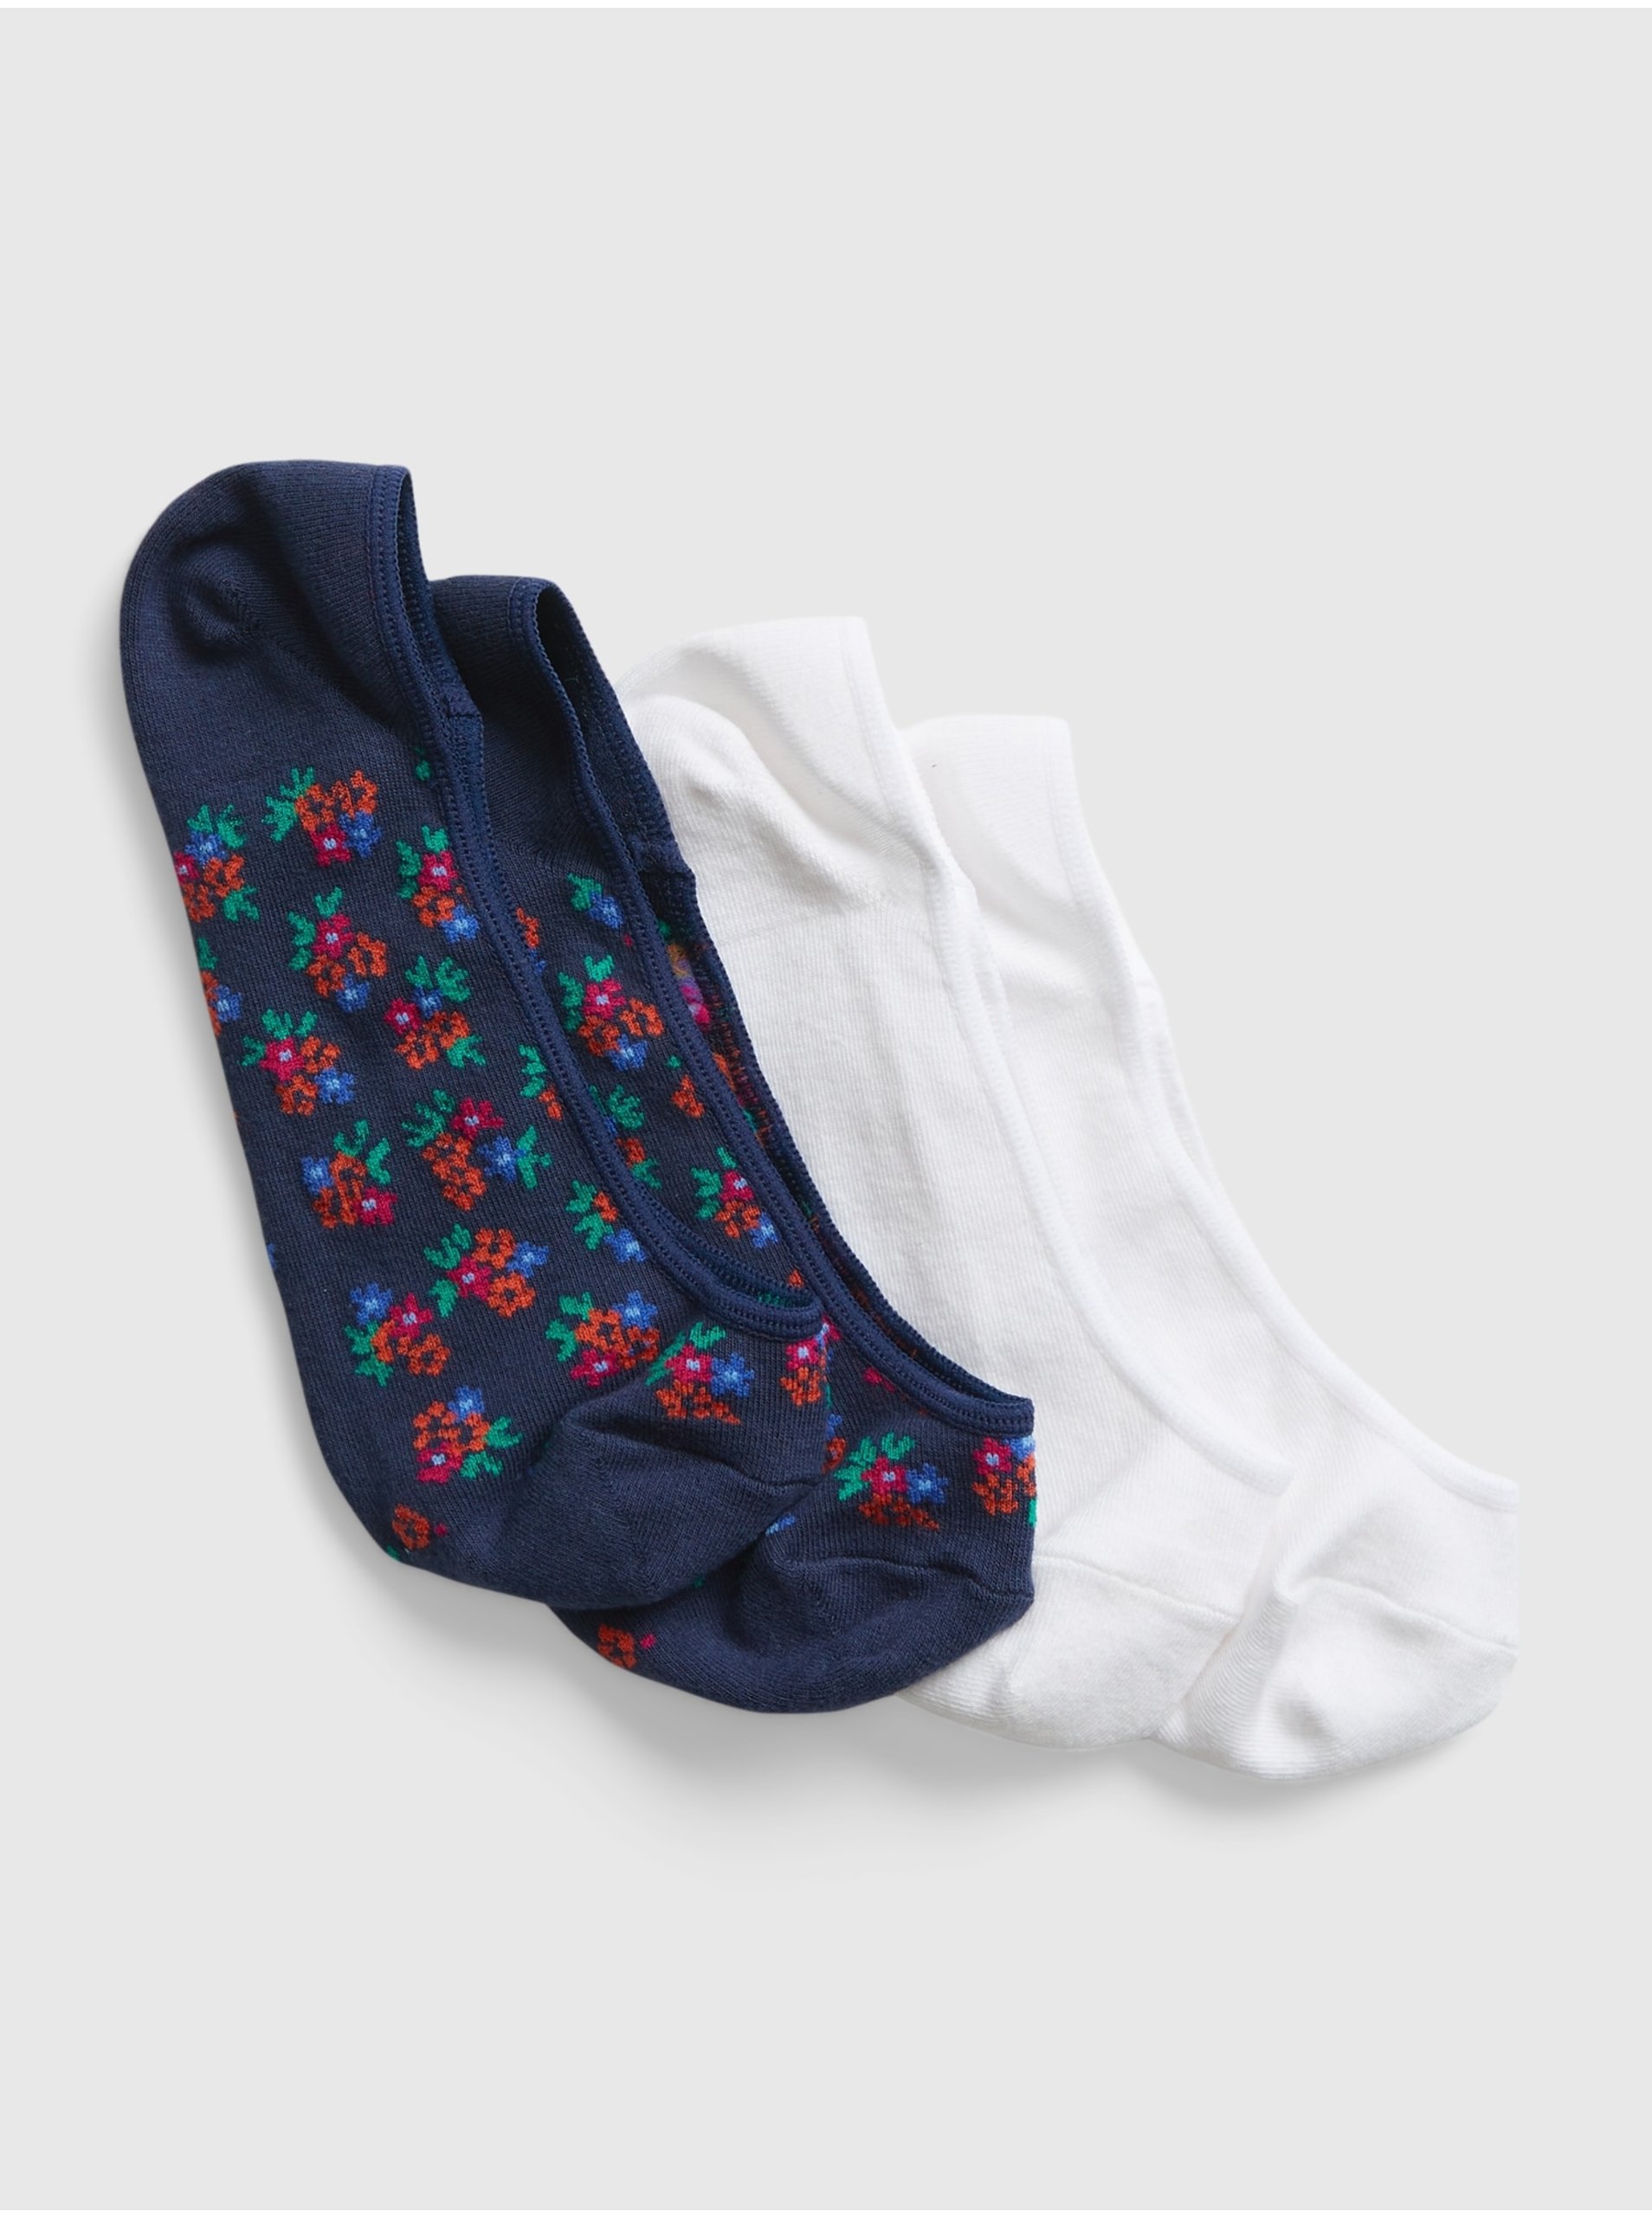 E-shop Modré dámské ponožky nízké GAP, 2 páry